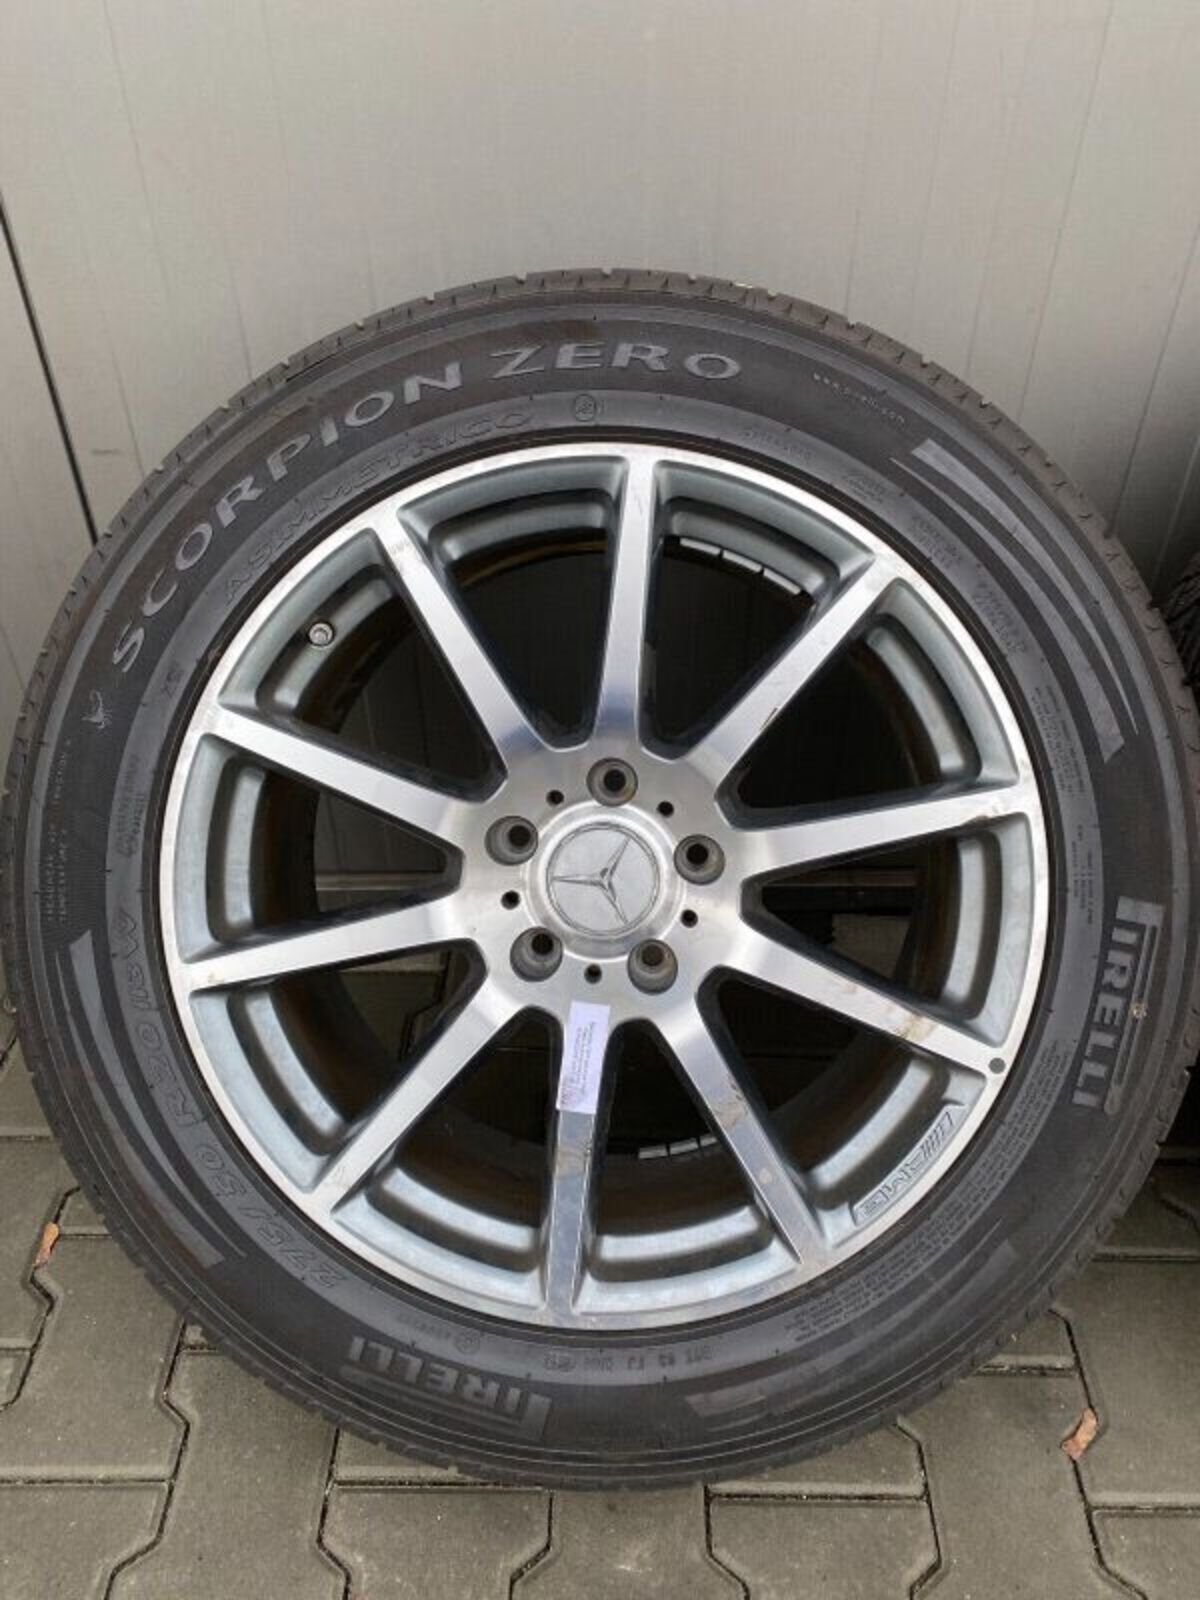 MERCEDES G63 G KLASSE Rader satz wheels set 20 inch 354830089339